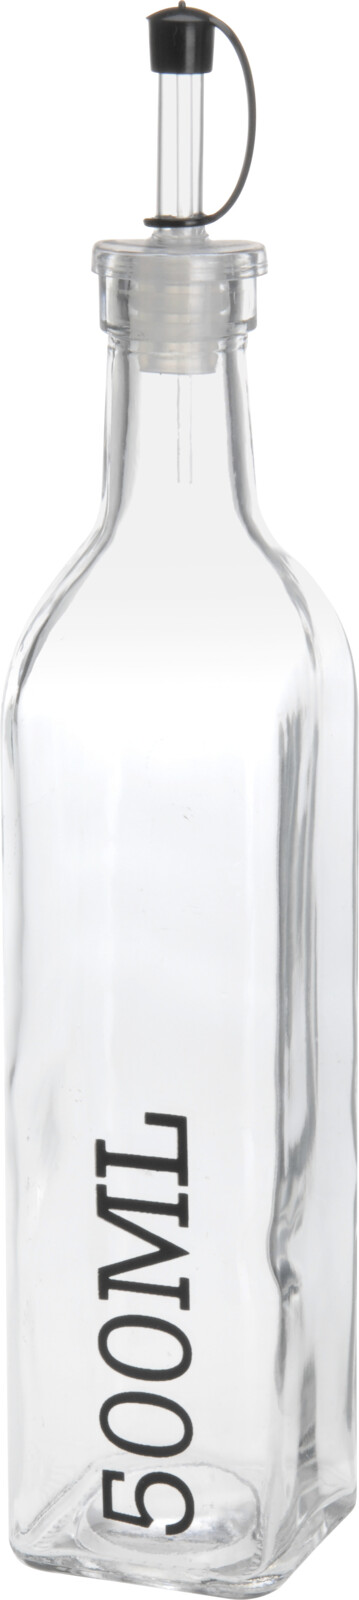 Glasflasche mit Ausgießer KITCHEN